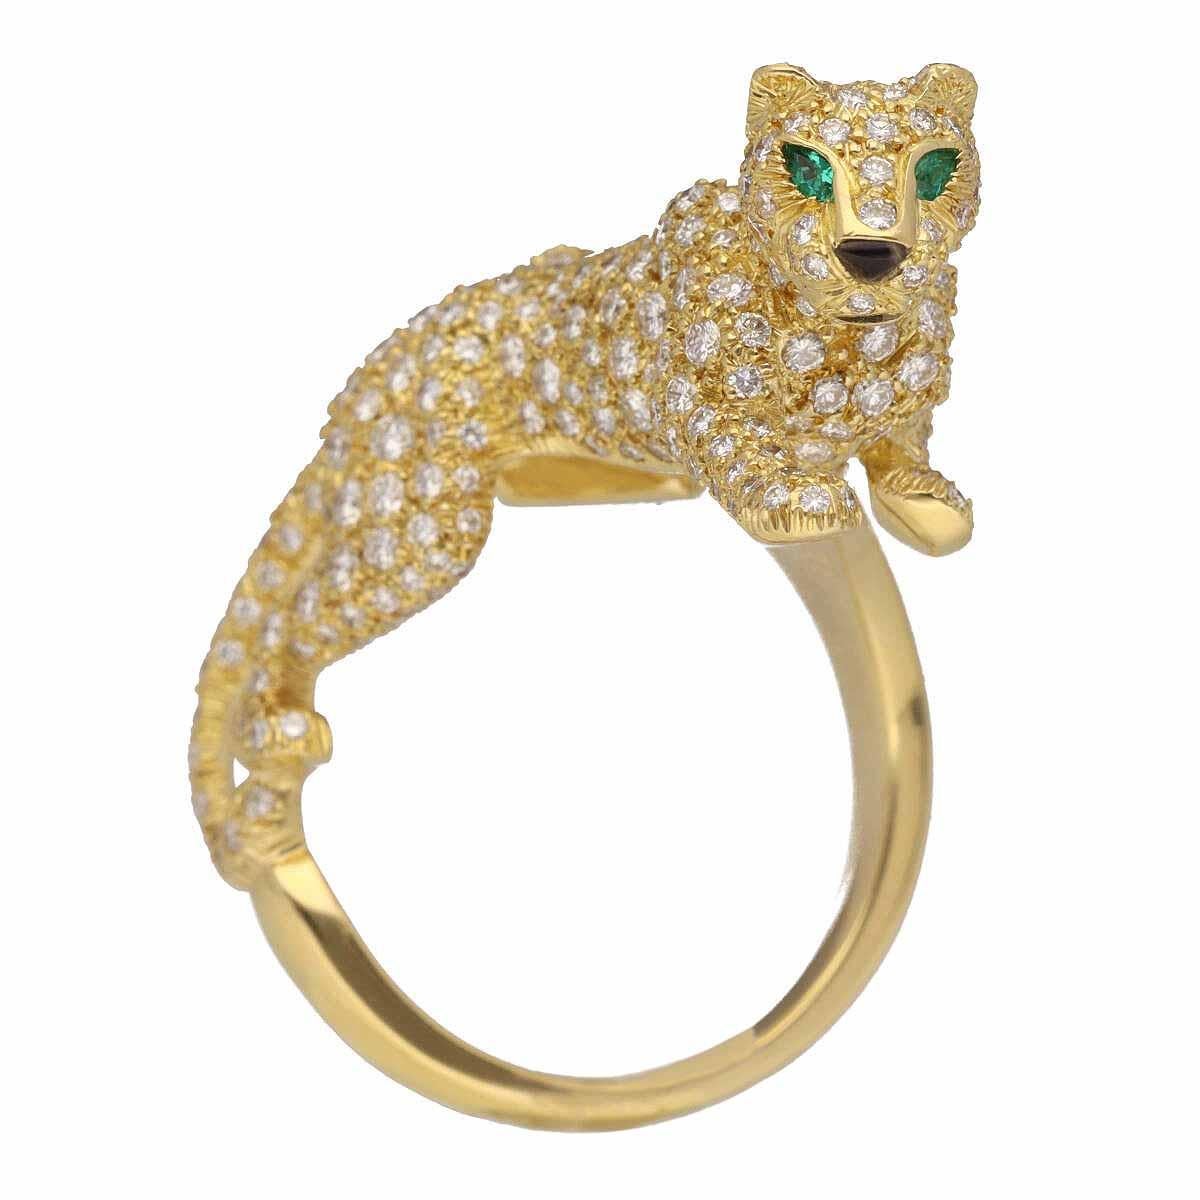 Marke:Cartier
Name:Panthere Sookie Ring
MATERIAL:Diamanten, 2P Smaragd, 1P Onyx,750 K18 YG Gelbgold
Gewicht:16.1g（ungefähr)
Ringgröße: Britisch & Australisch:P  /  USA und Kanada:7  /  Französisch & Russisch:55 /  Deutsch:17 3/4 /  Japanisch:  15